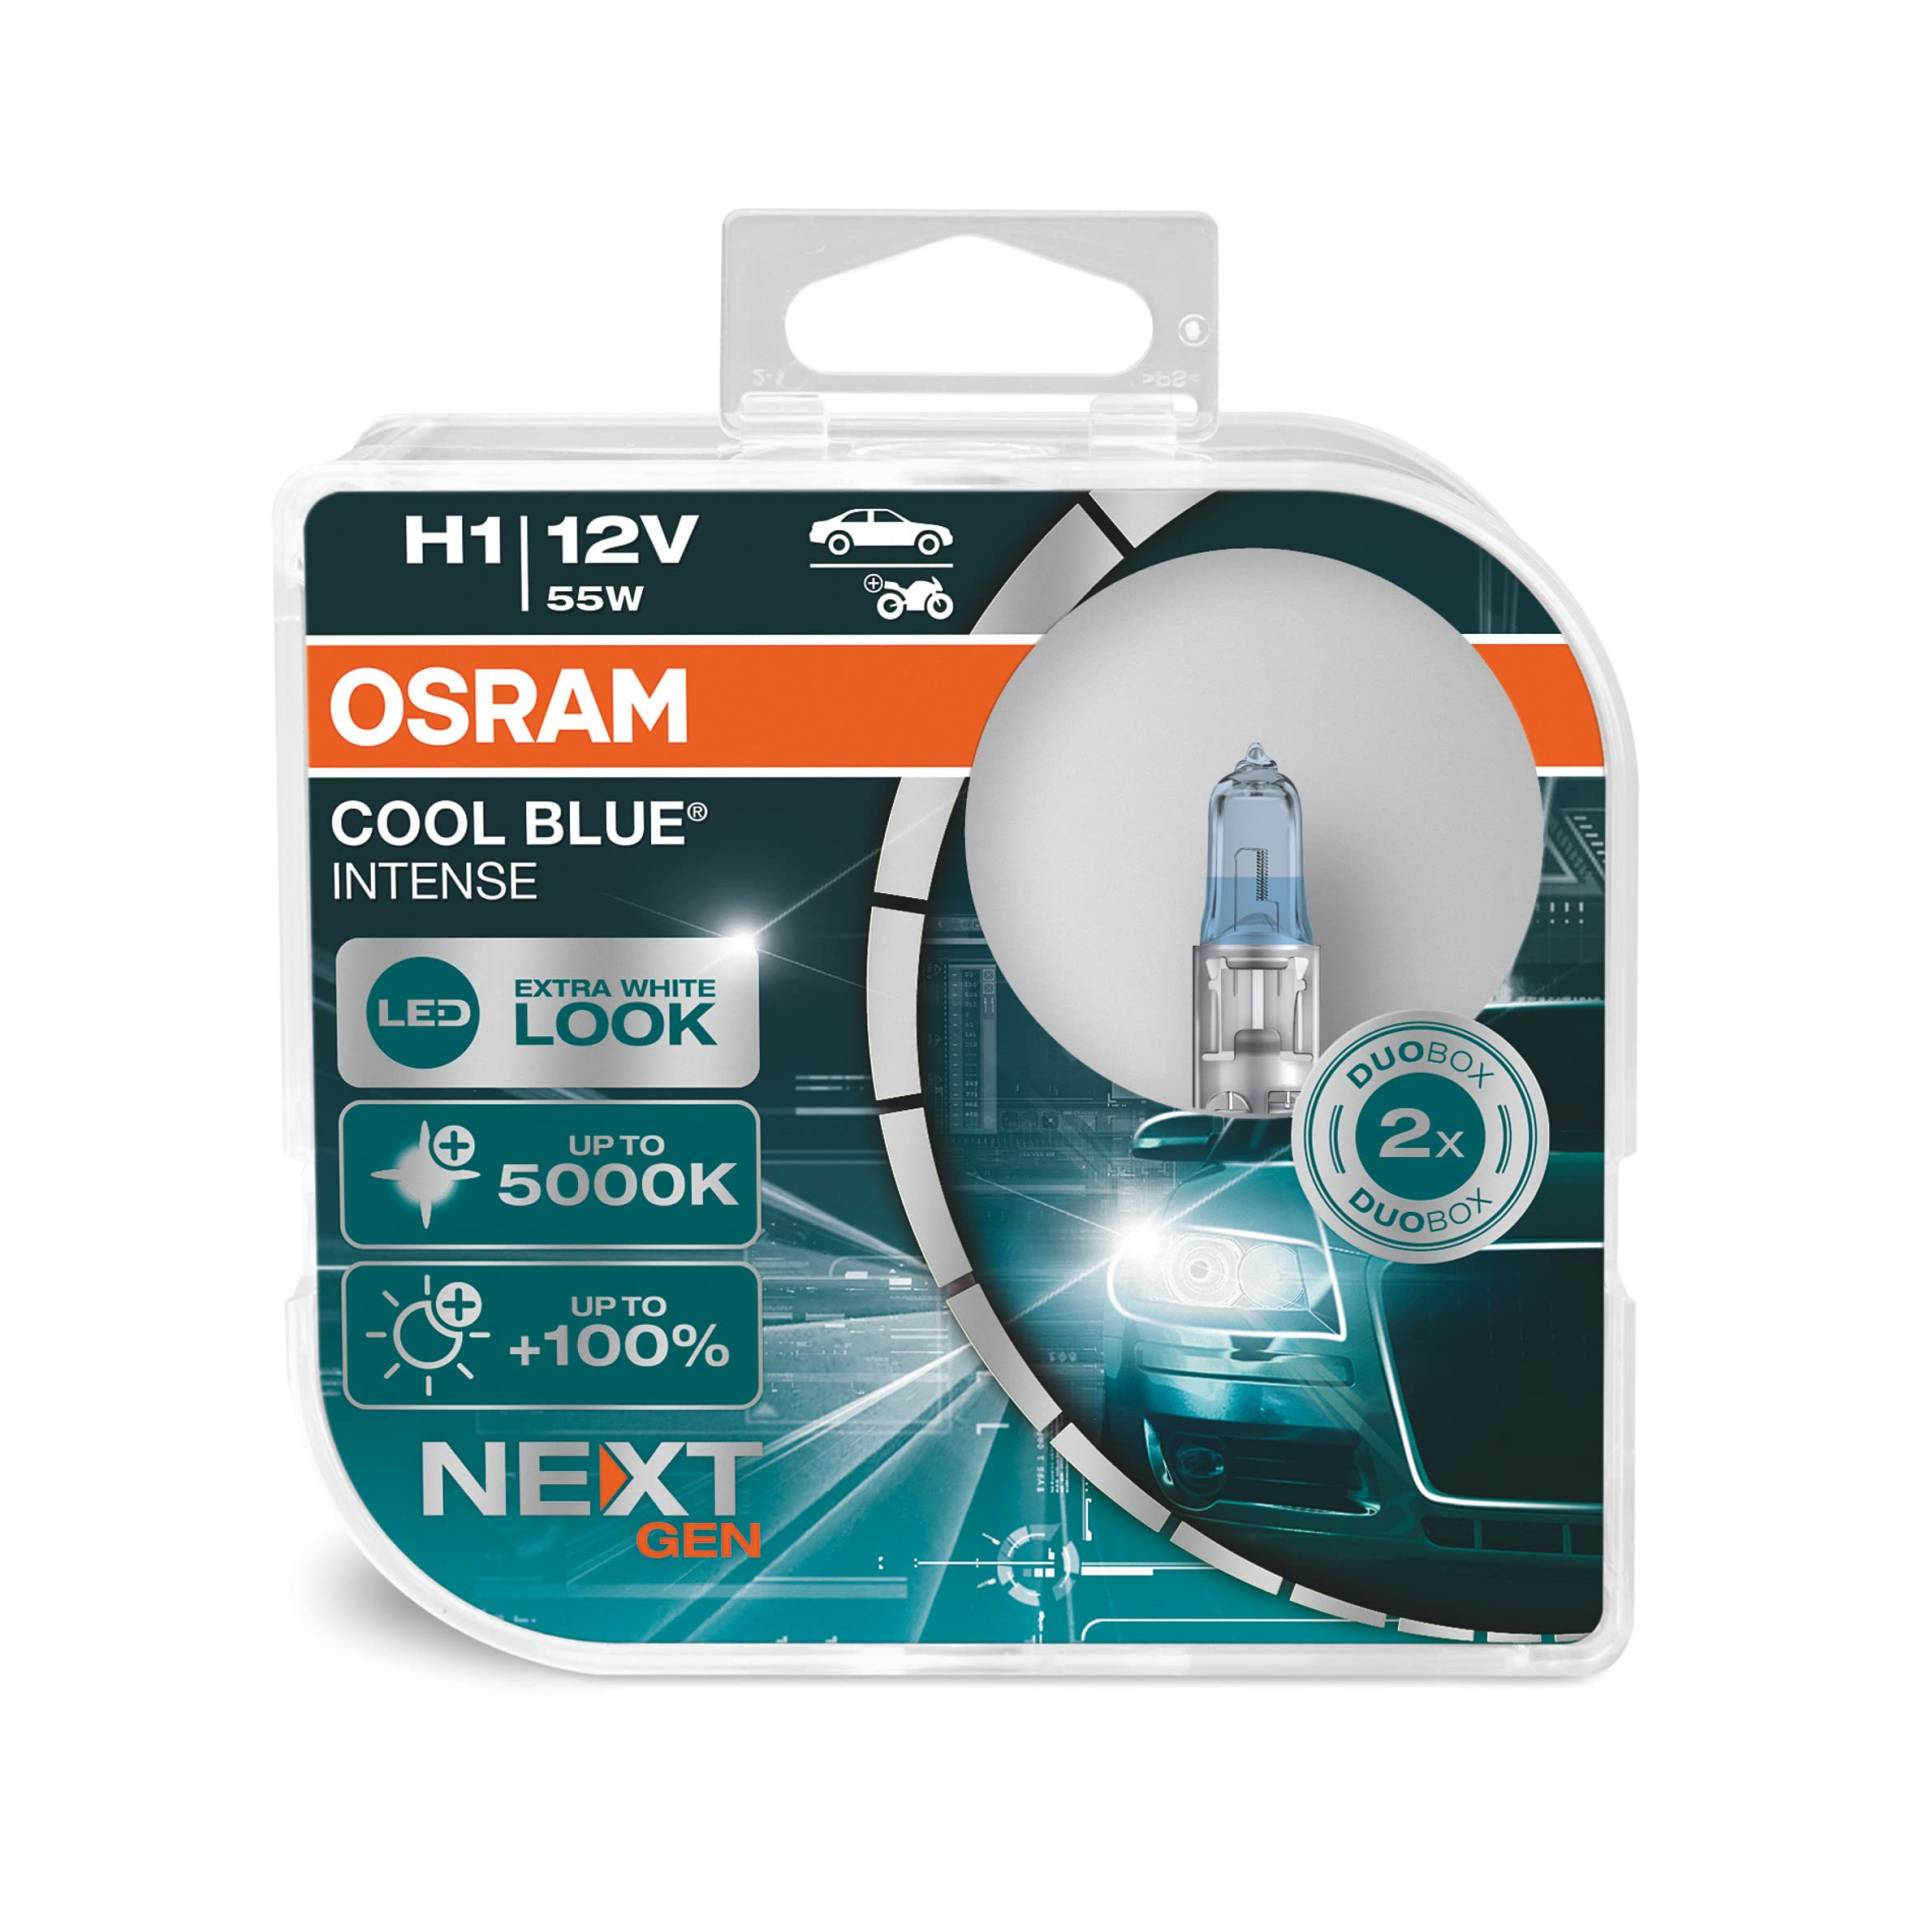 Osram Cool Blue Intense H1, mit 100 Prozent mehr Helligkeit, bis zu 5.000K, Halogen-Scheinwerferlampe, LED-Look, Duo Box (2 Lampen), Fahrzeugspezifische Passform, Blue, Duo Box von Osram